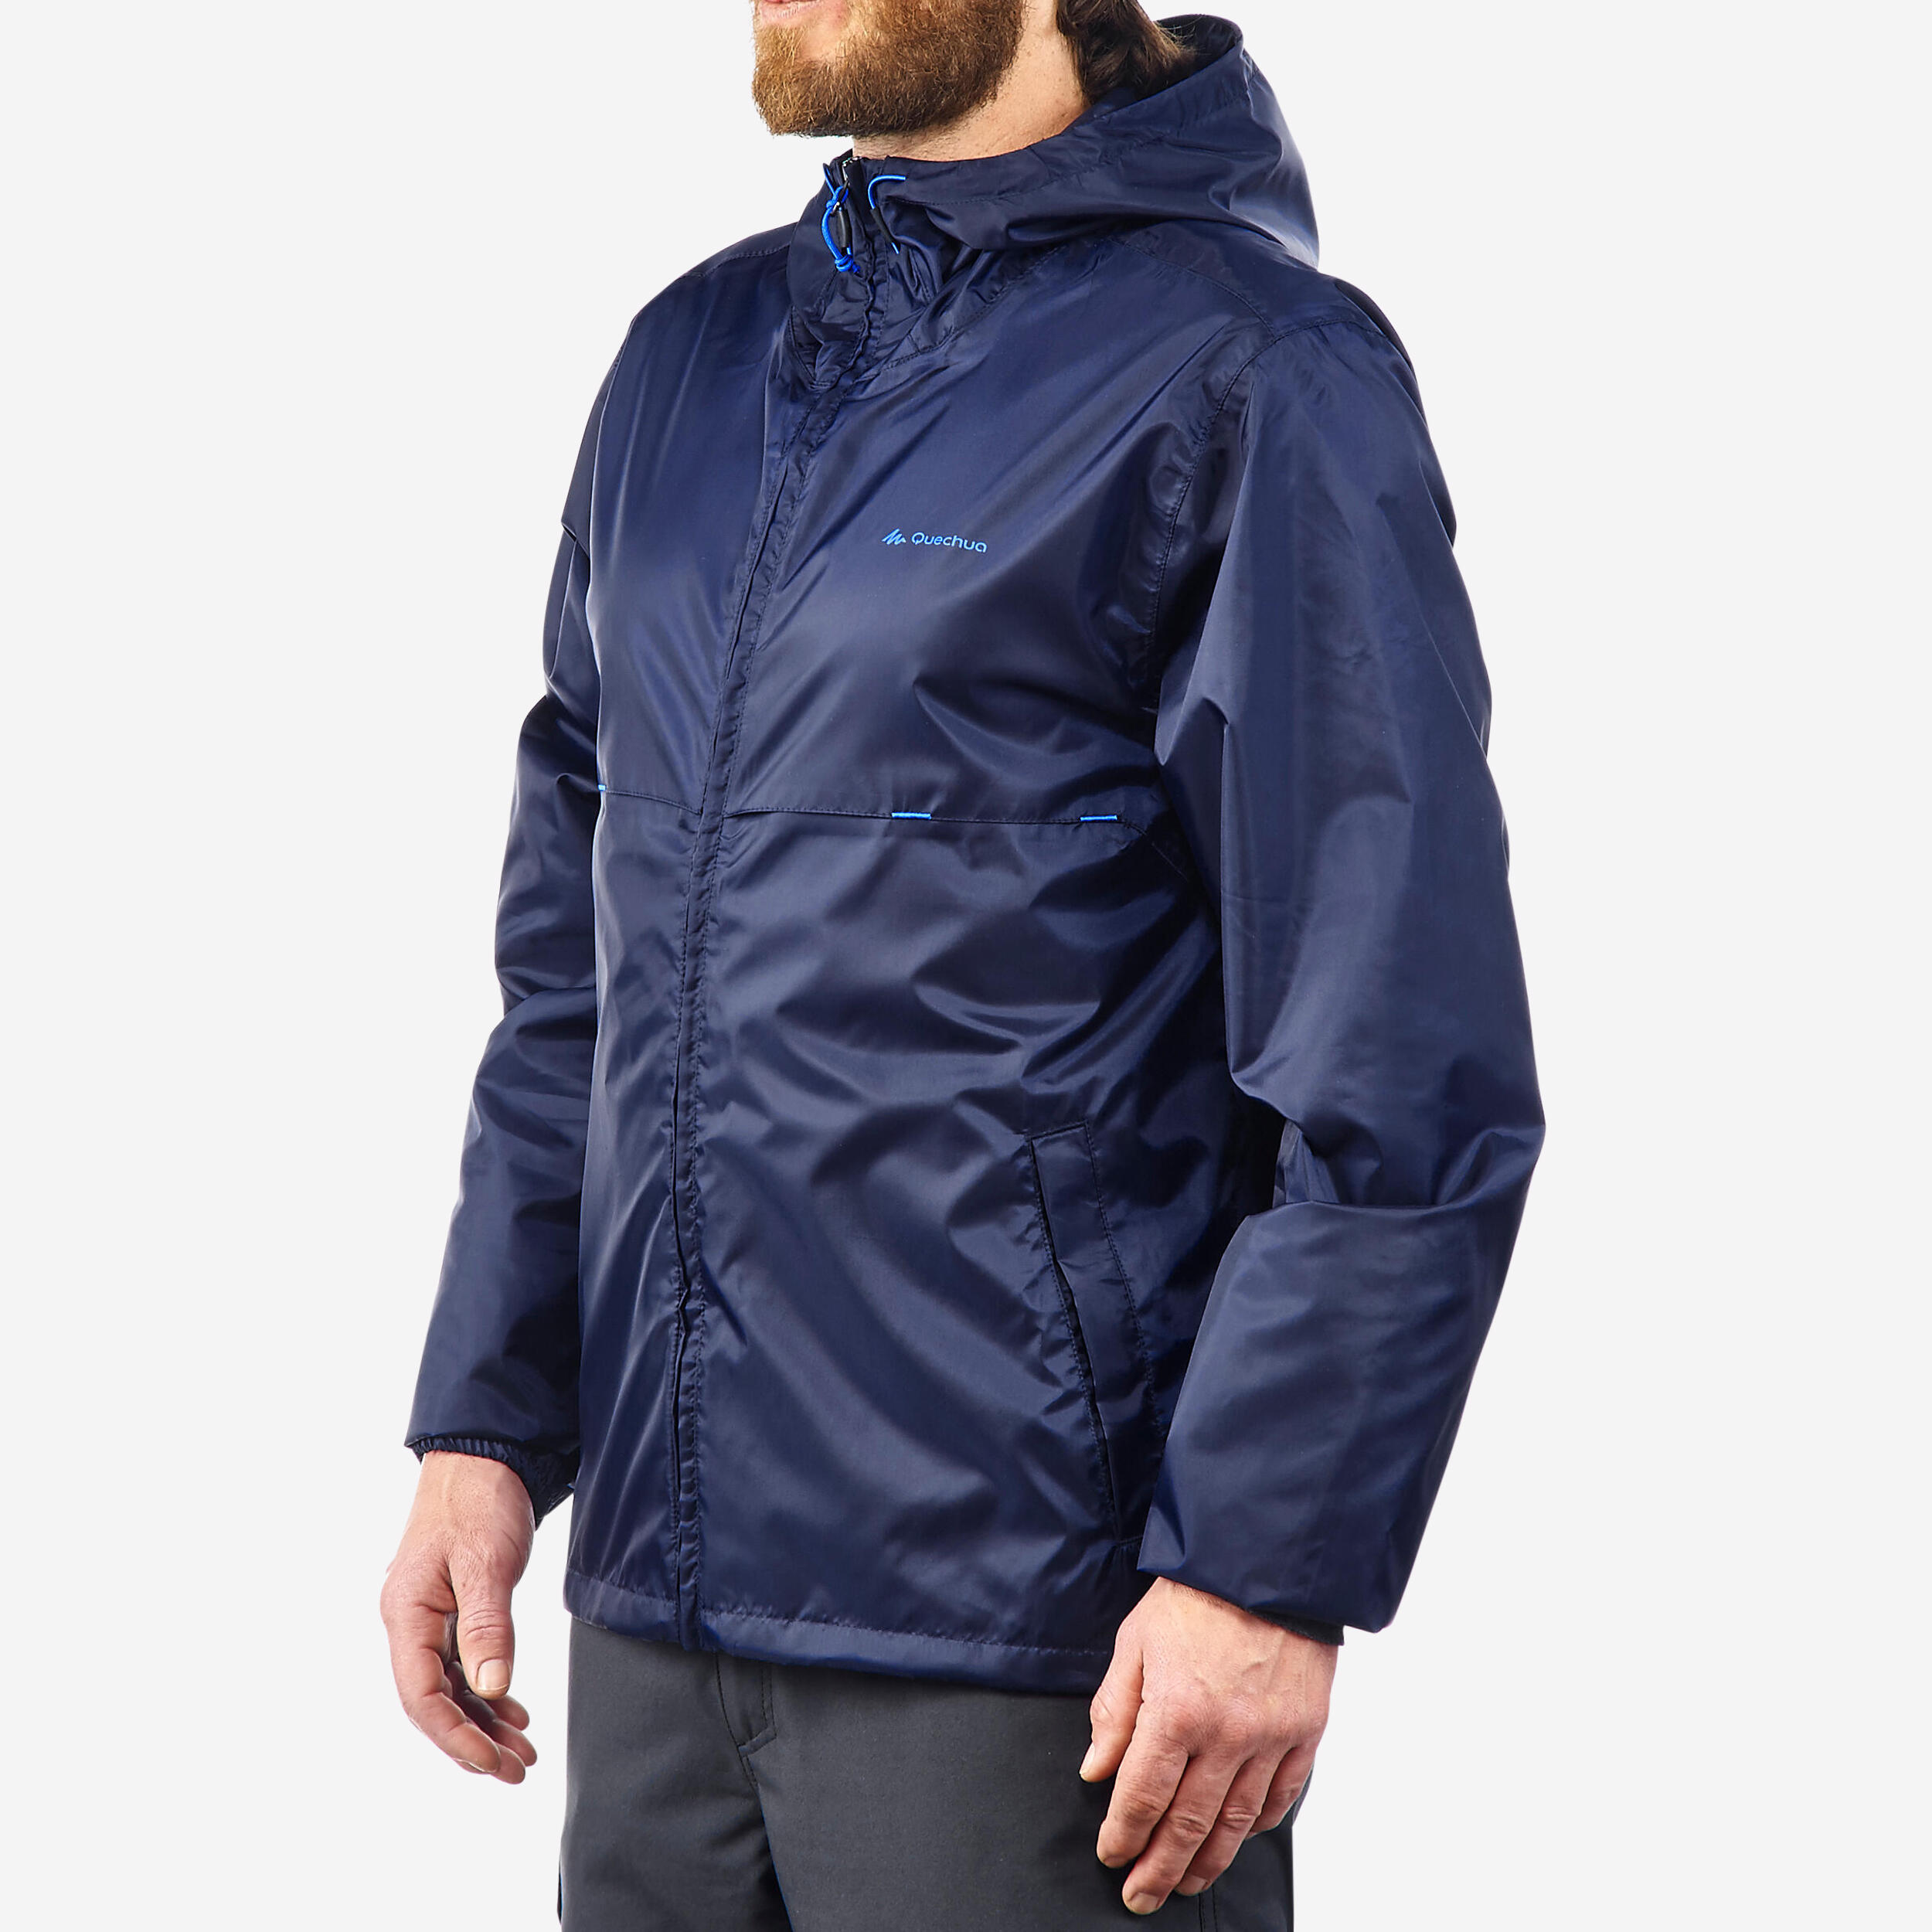 Men's Windproof and Water-repellent Hiking Jacket - Raincut Full Zip 1/13